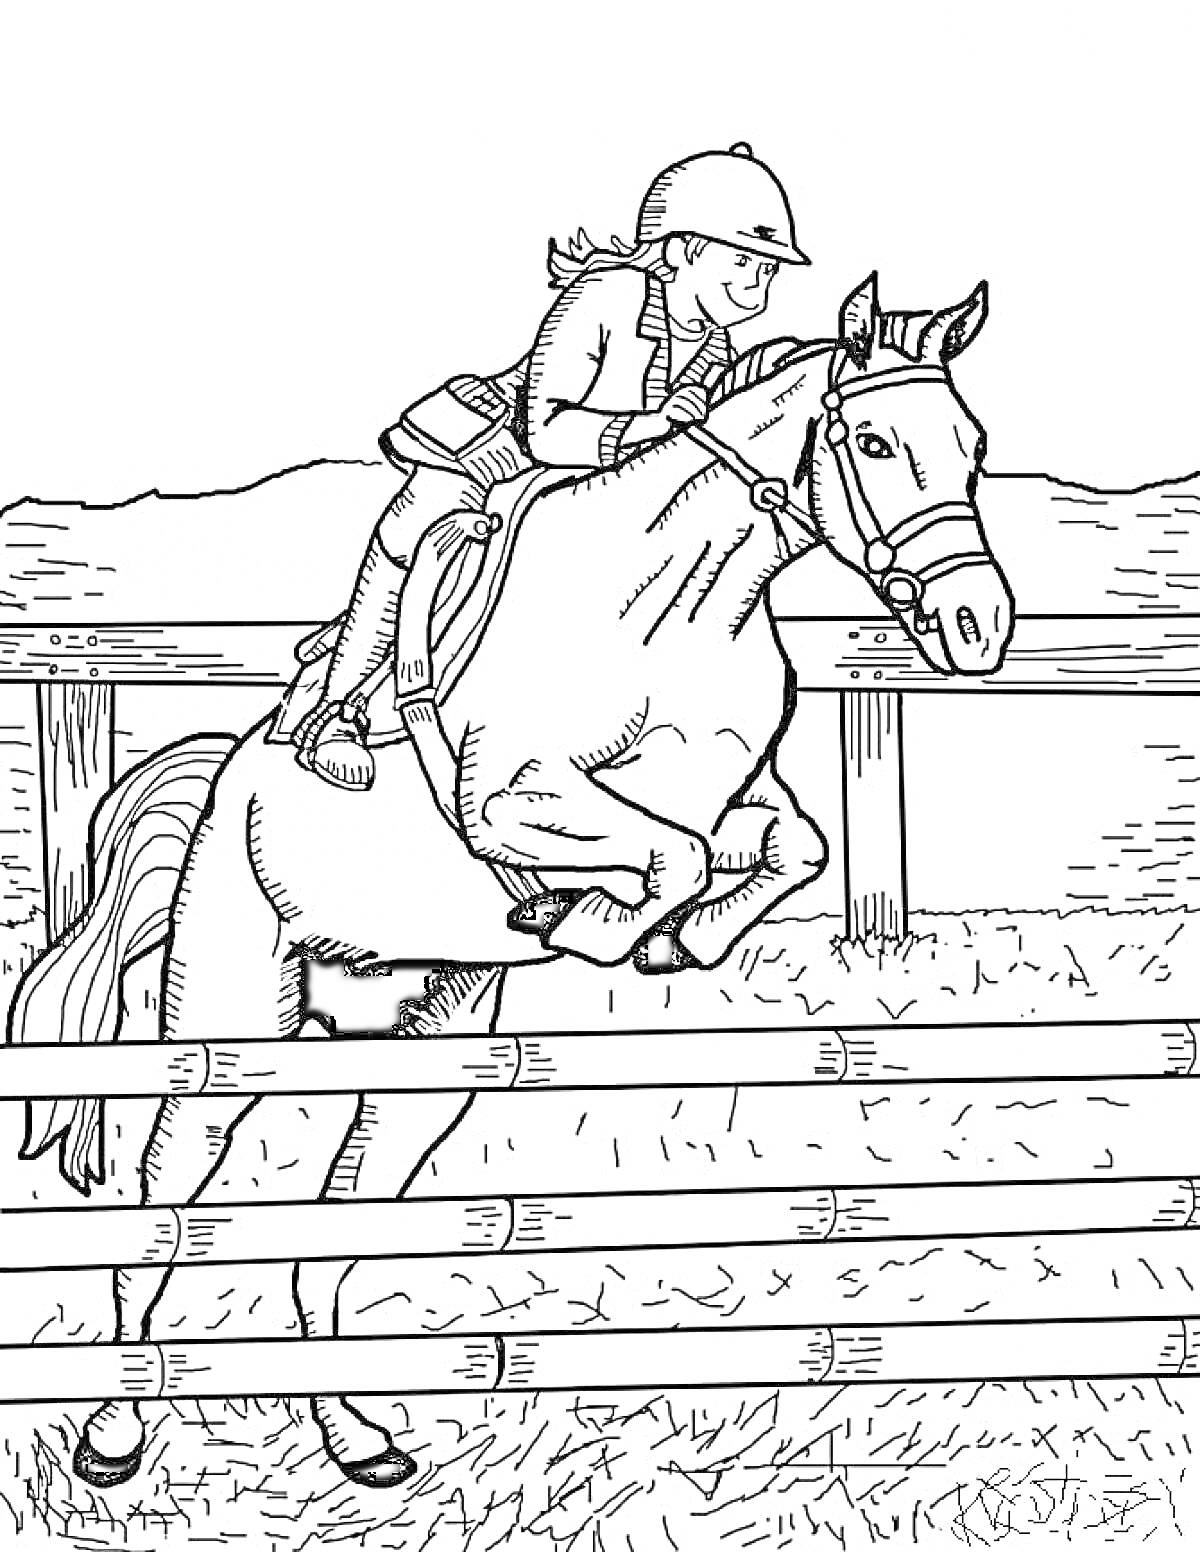 Ребёнок верхом на лошади, перепрыгивающей через препятствие, ограда, фон с холмами и травой